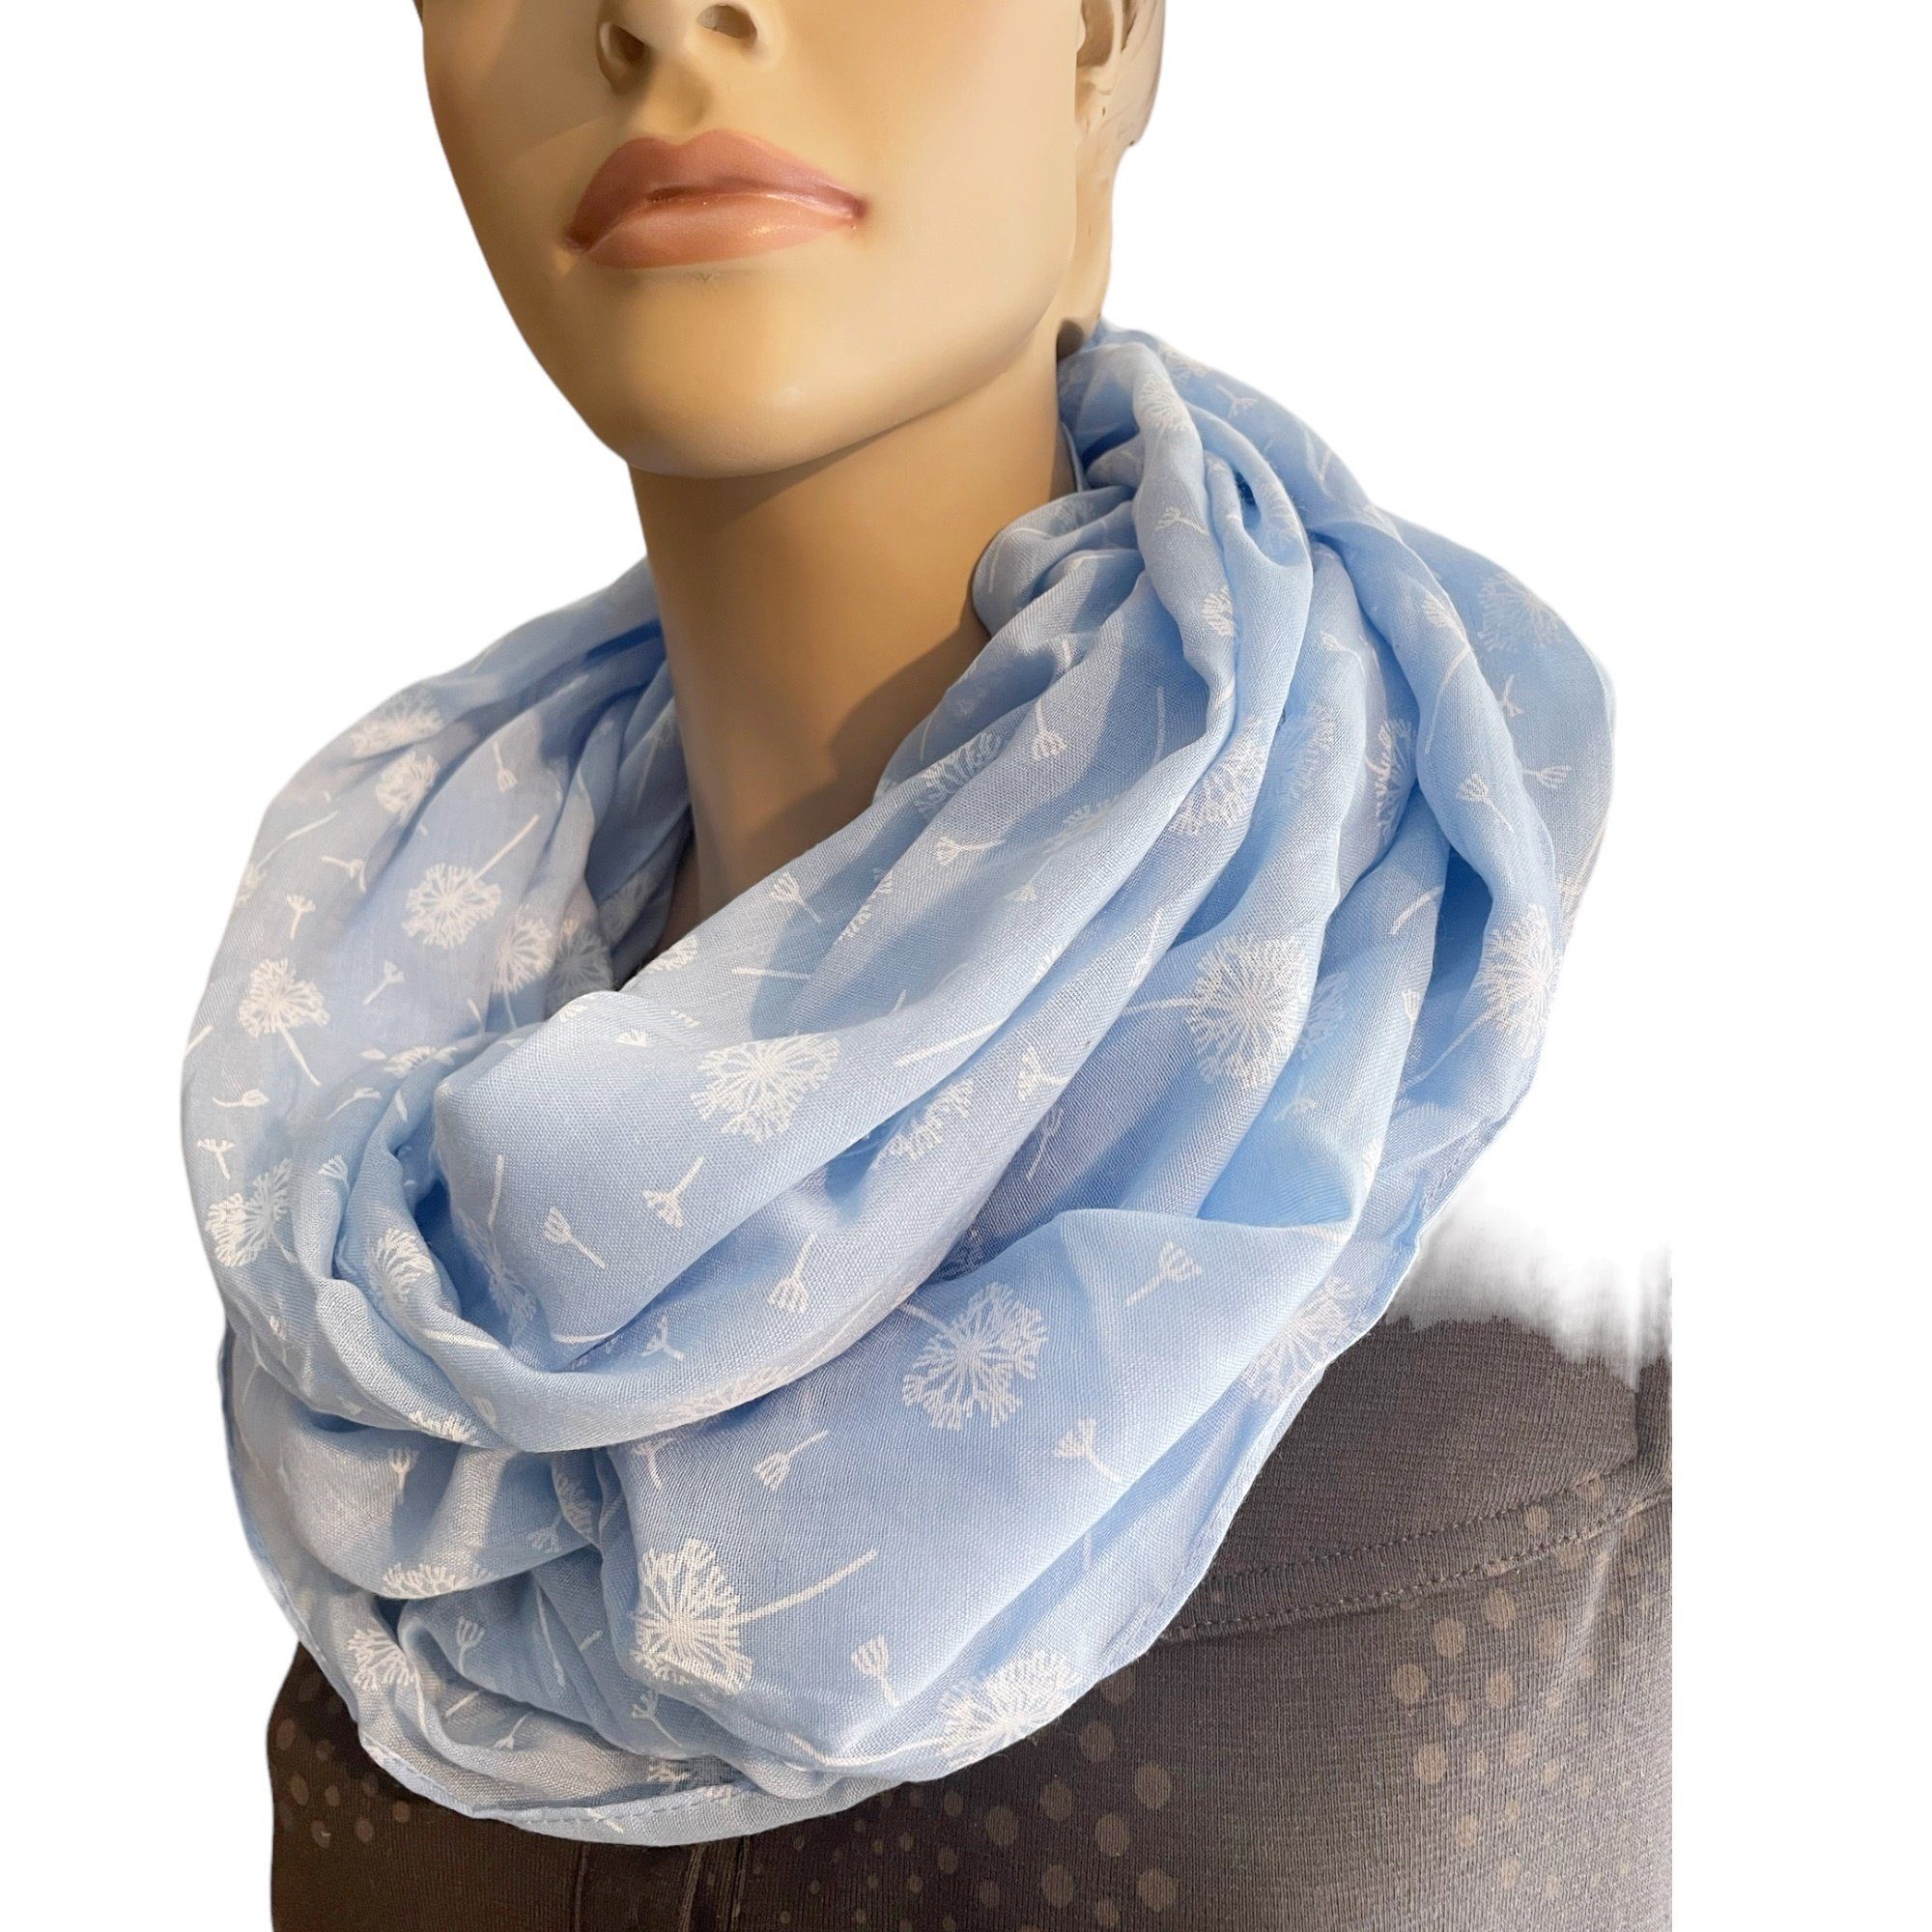 Schals print, Trend mit Sommer & Loop SS-731 Muster, hellblau Farbwahl, Schal Tücher Damen Taschen4life Pusteblumen